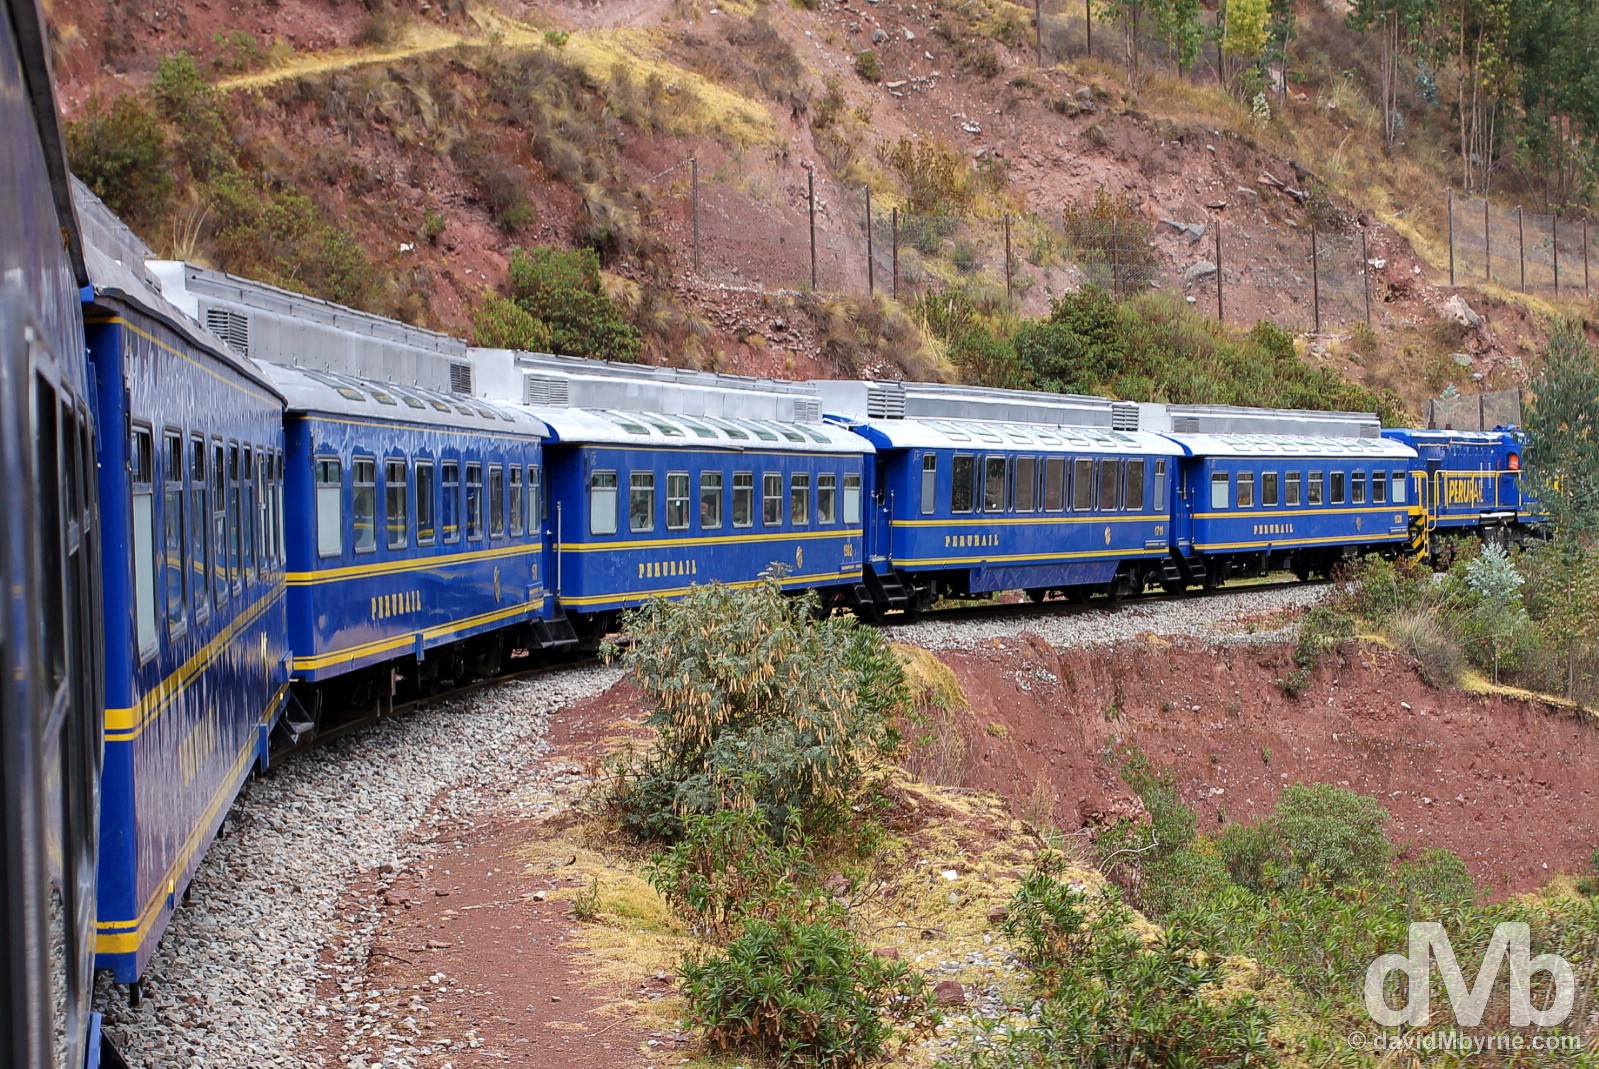 Peru Rail’s 07:42 Expedition service from Cusco to Machu Picchu Peublo/Aguas Calientes, Peru. August 14, 2015.